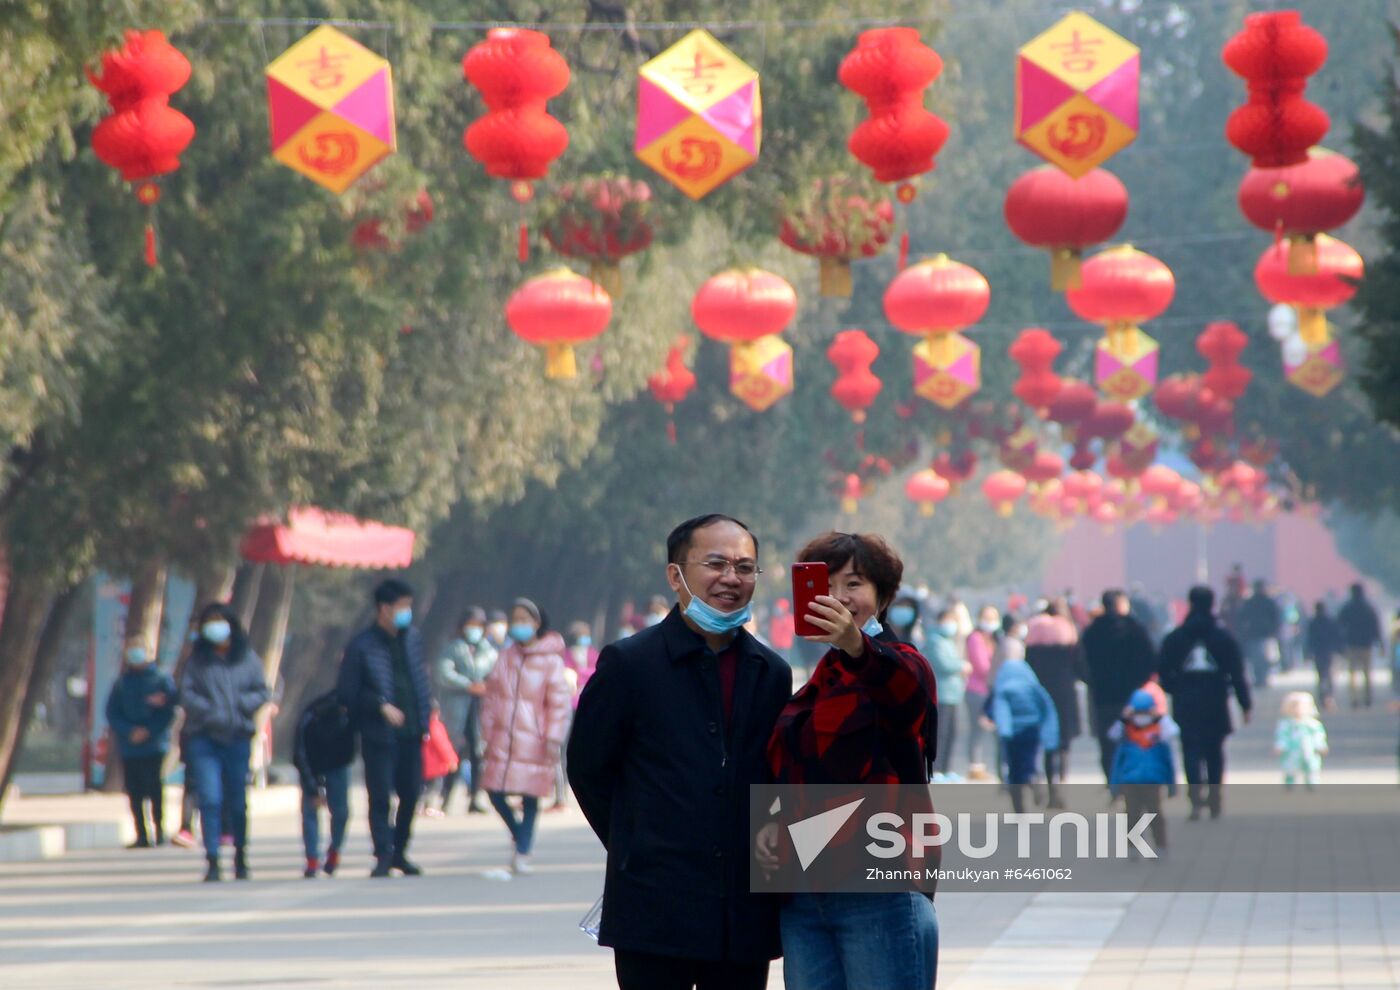 China New Year Celebration